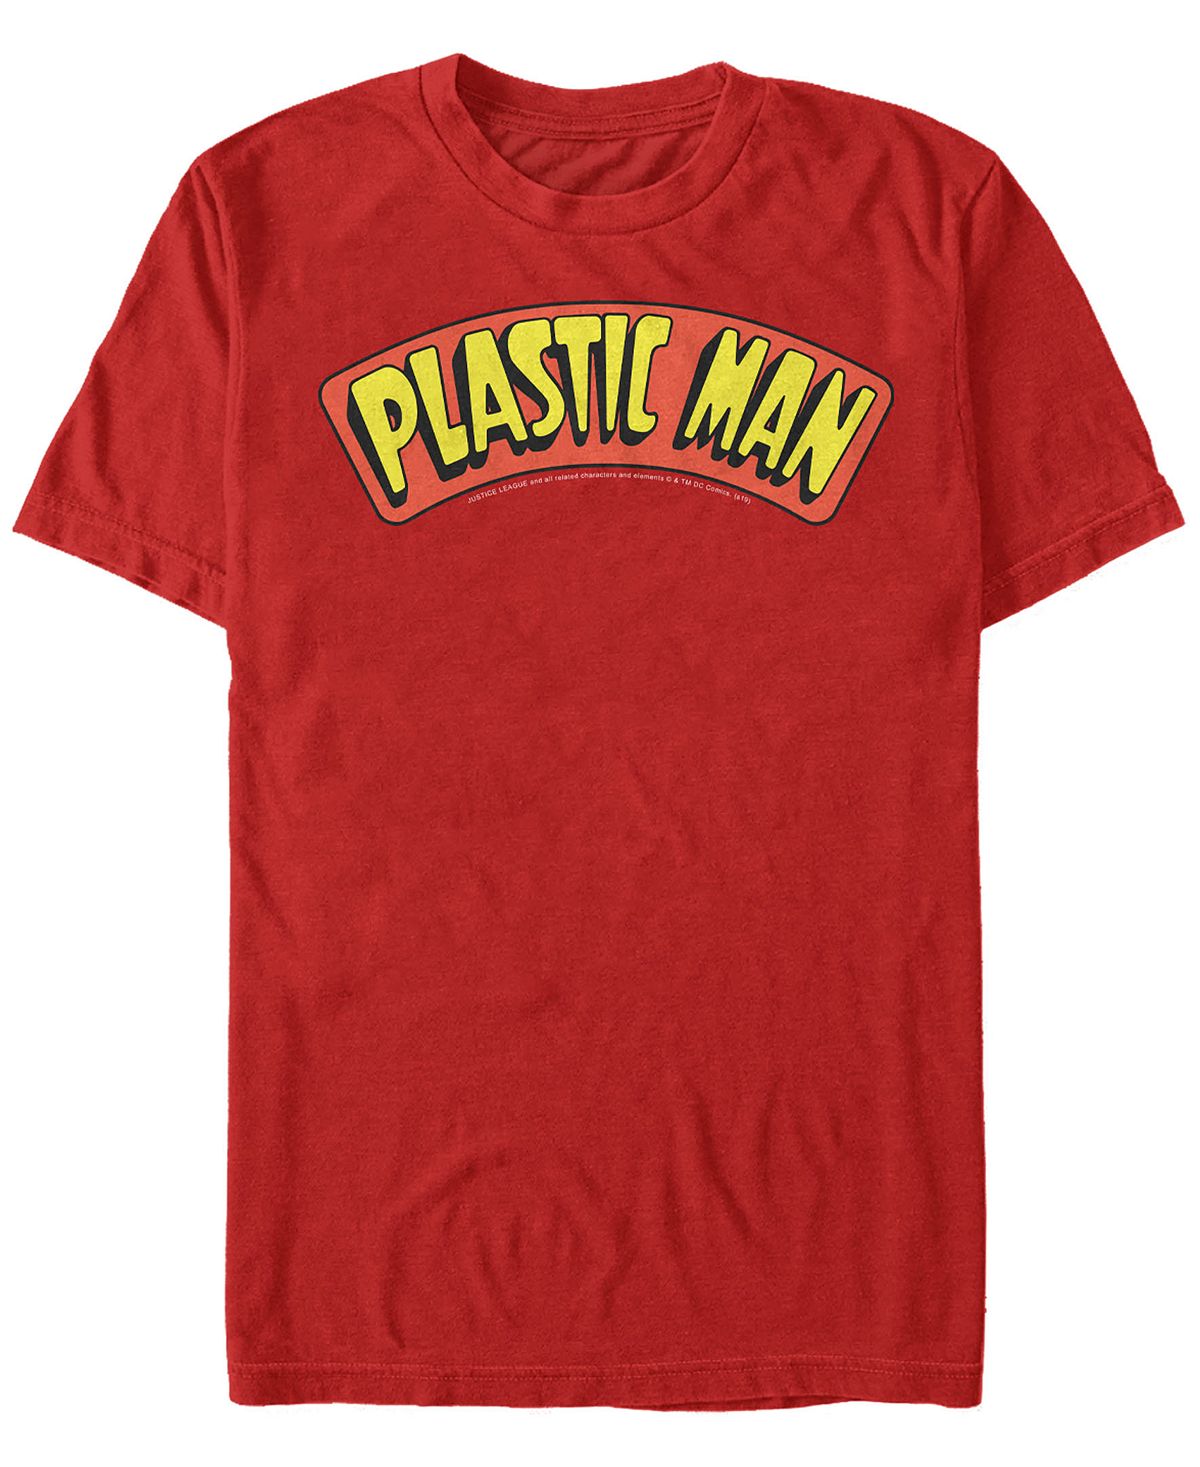 Мужская футболка с коротким рукавом с пластиковым логотипом dc dc Fifth Sun, красный мужская футболка dc batman gotham guardian с коротким рукавом fifth sun черный